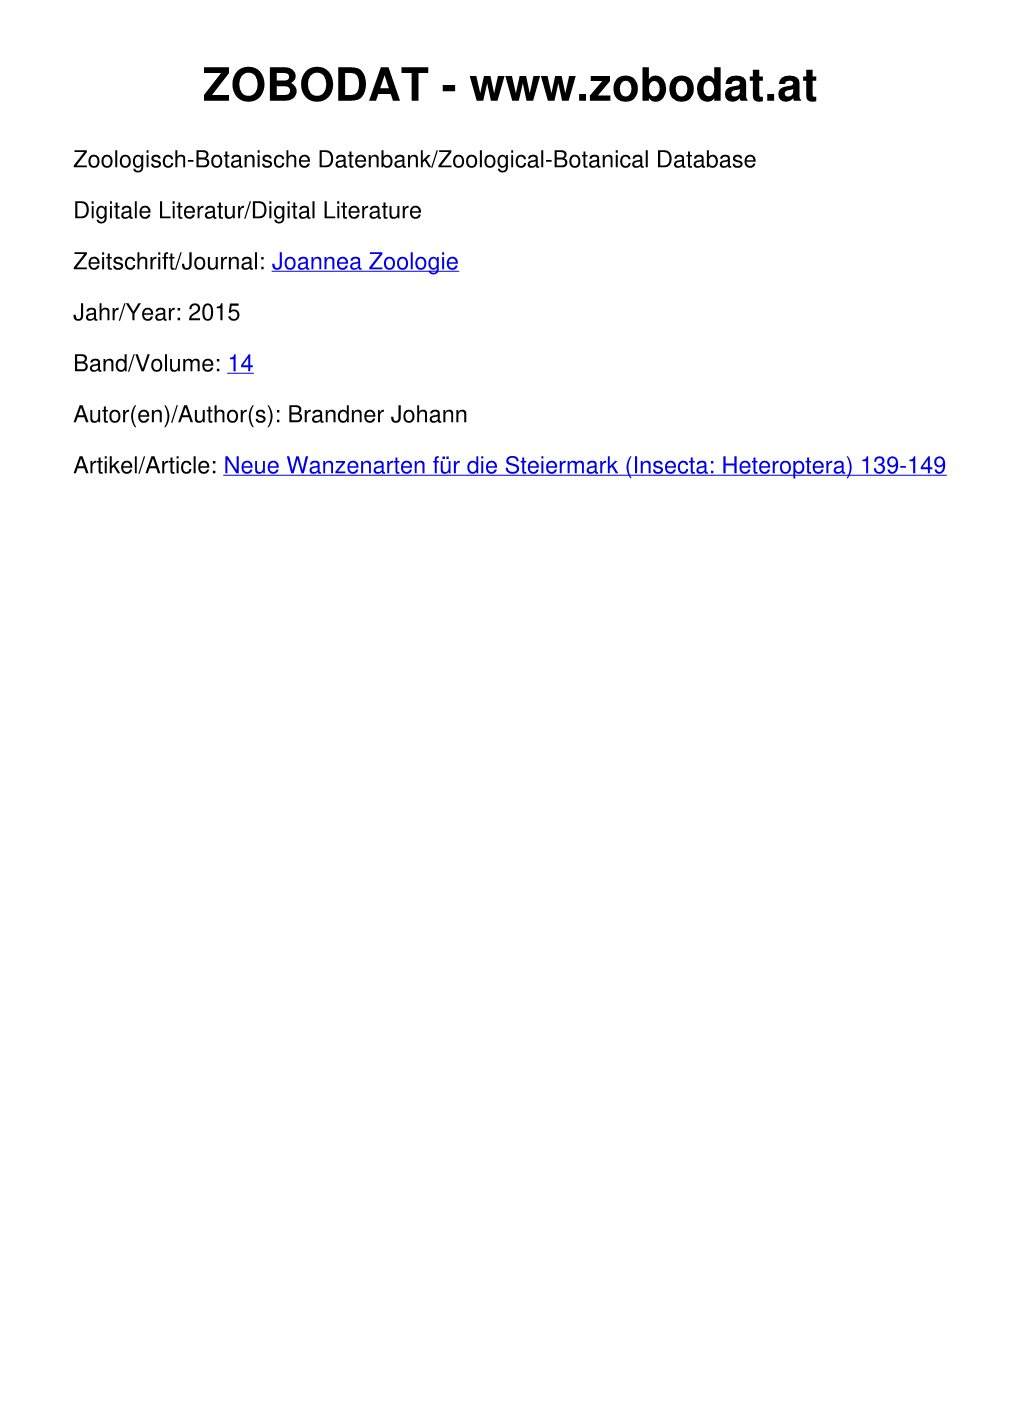 Neue Wanzenarten Für Die Steiermark (Insecta: Heteroptera) 139-149 Joannea Zoologie 14: 139–149 (2015)